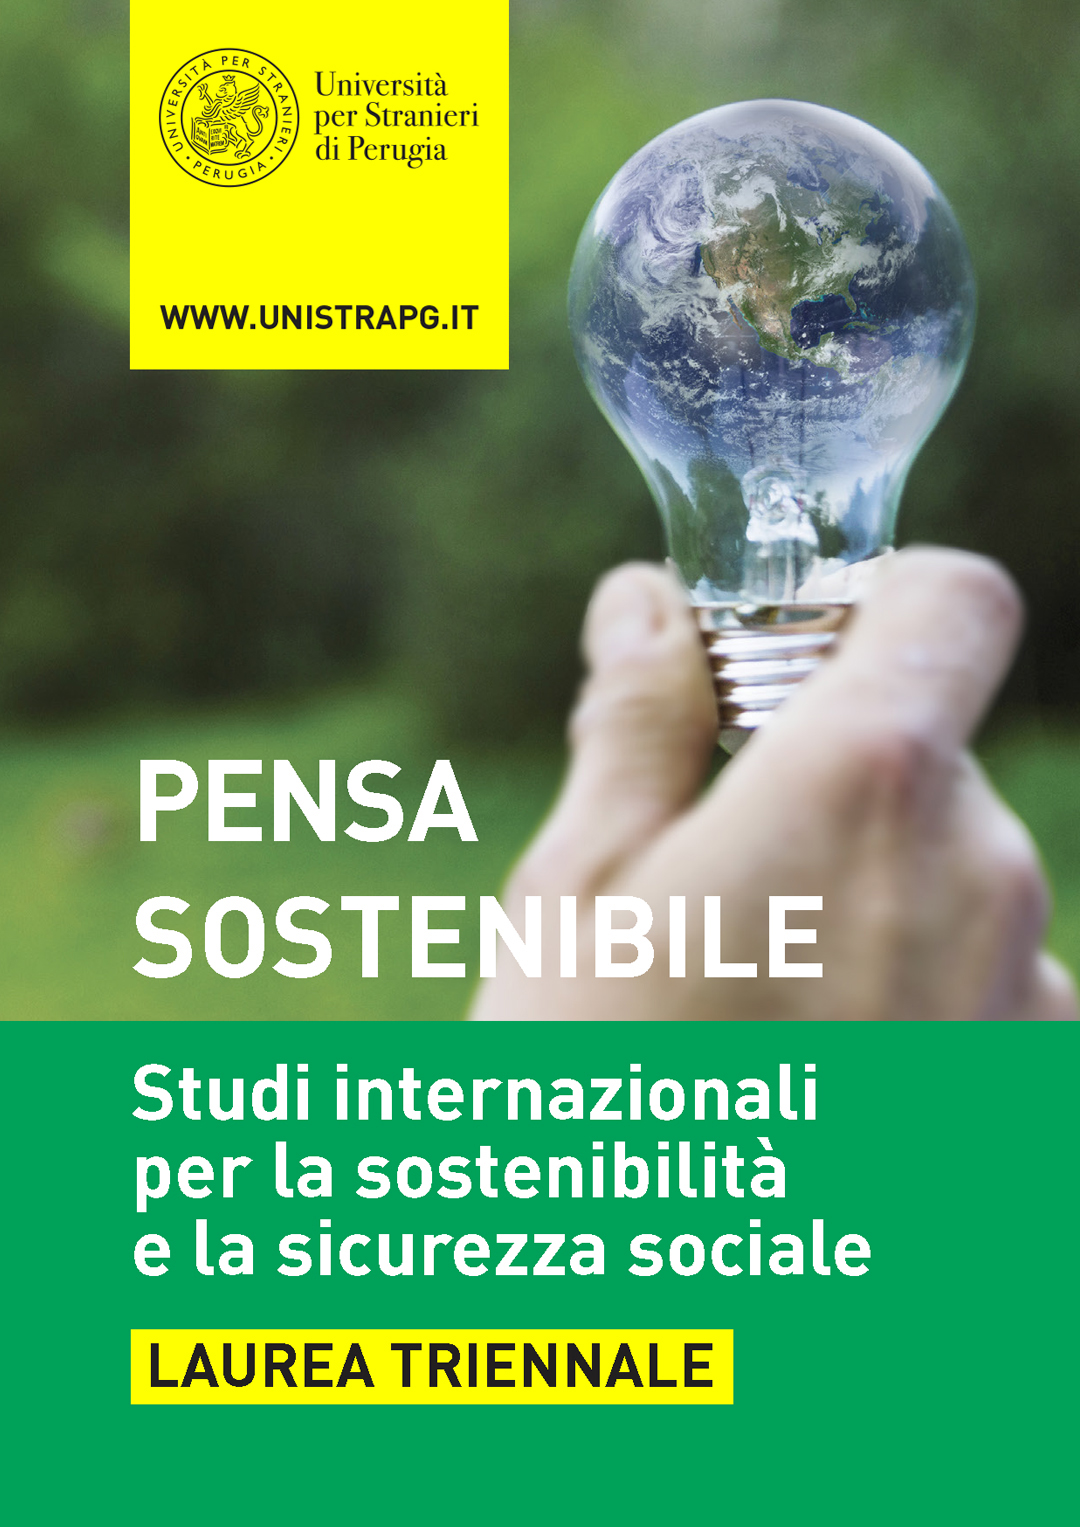 Studi internazionali per la sostenibilità e la sicurezza sociale